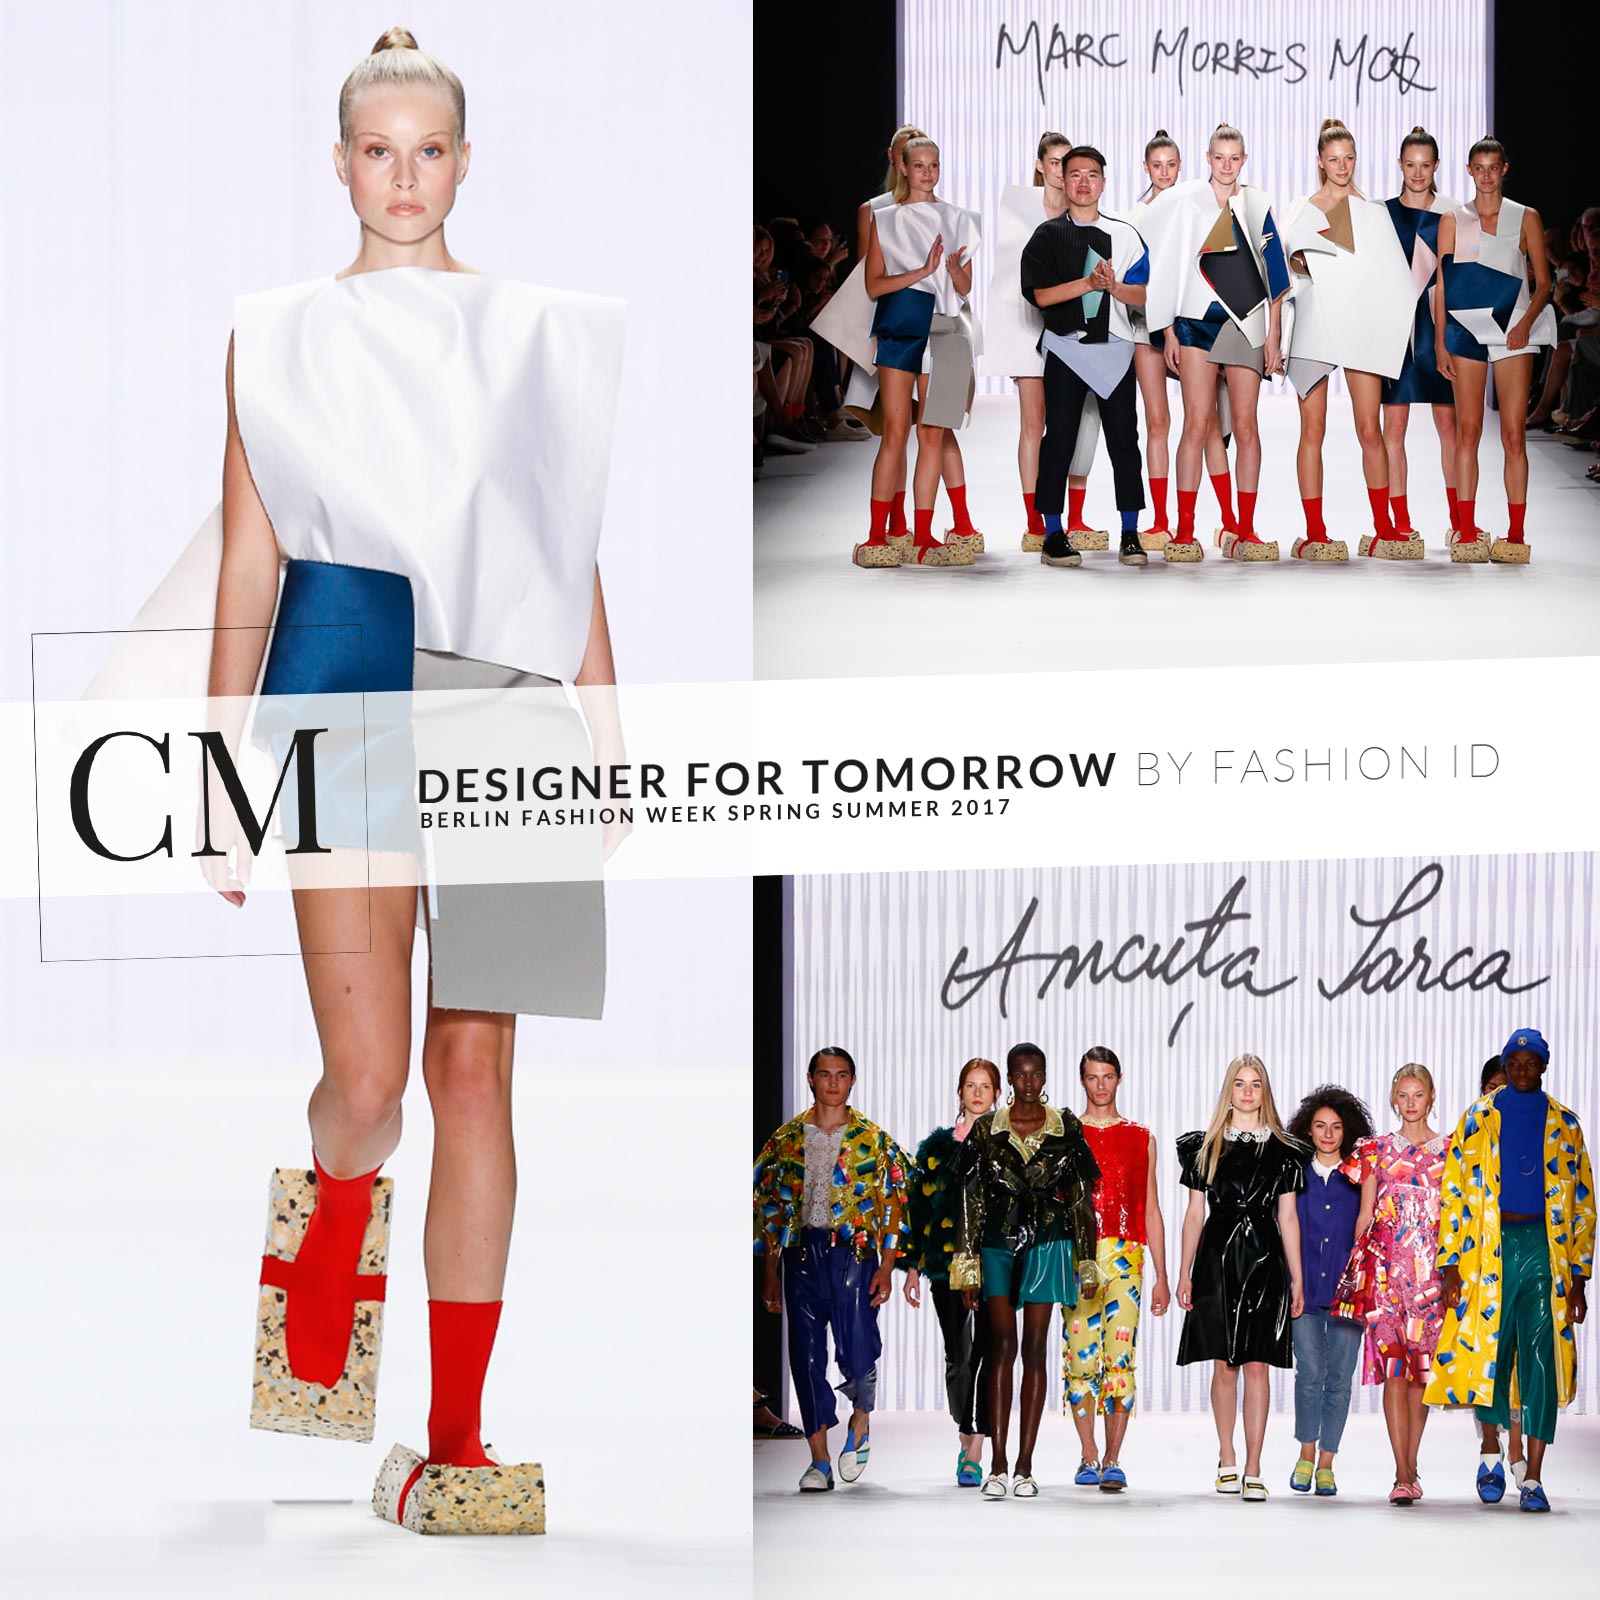 model-anne-mac-morris-mok-designer-for-tomorrow-peek-cloppenburg-fashion-id-mercedes-benz-fashion-week-berlin-fruejahr-sommer-2017-1